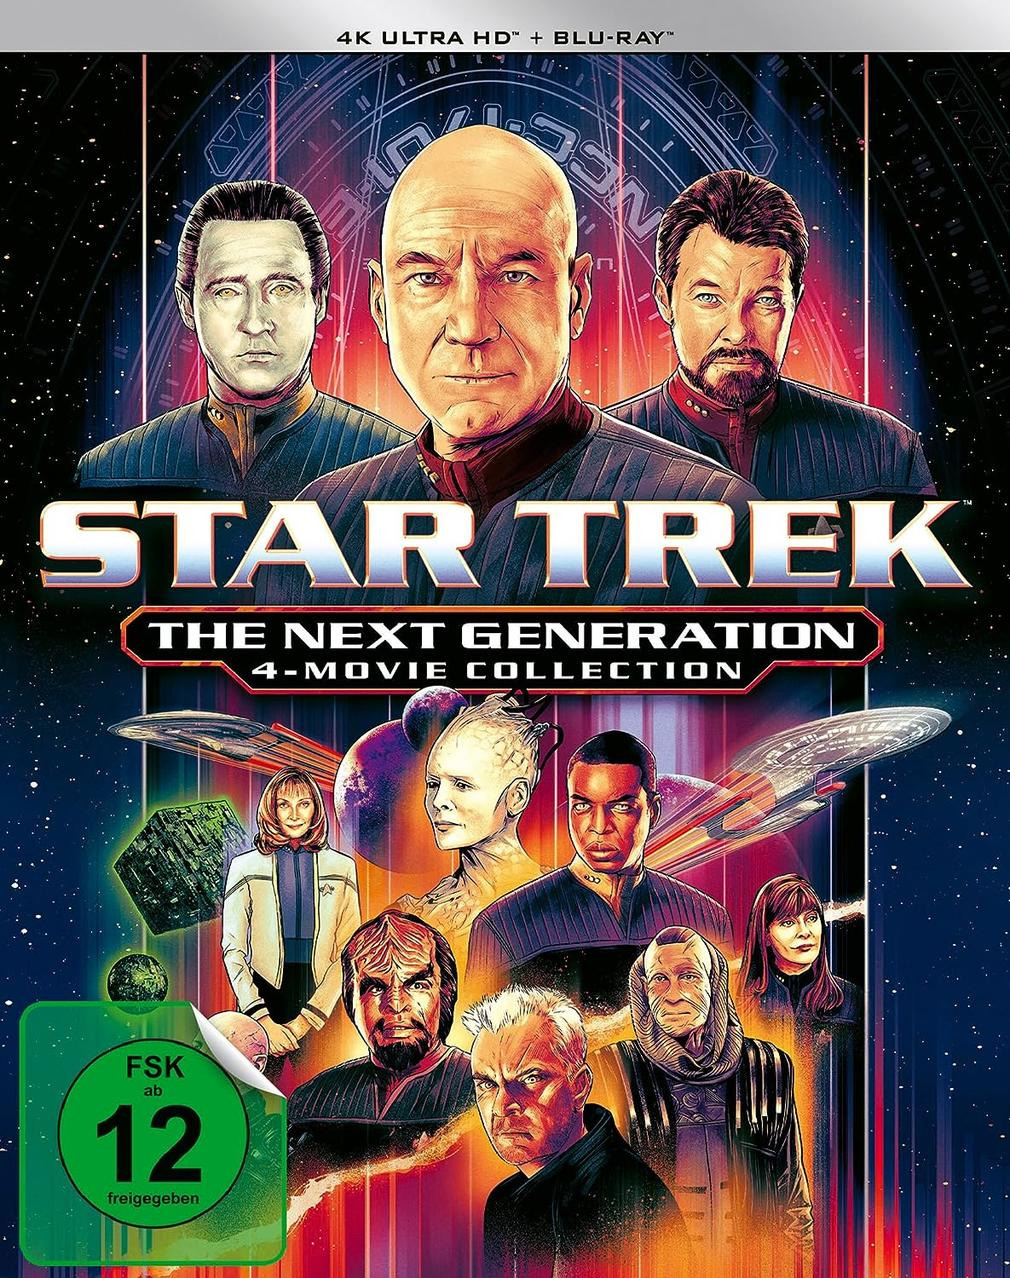 Blu-ray The Trek: HD 4K Star + Next Generation Ultra Blu-ray